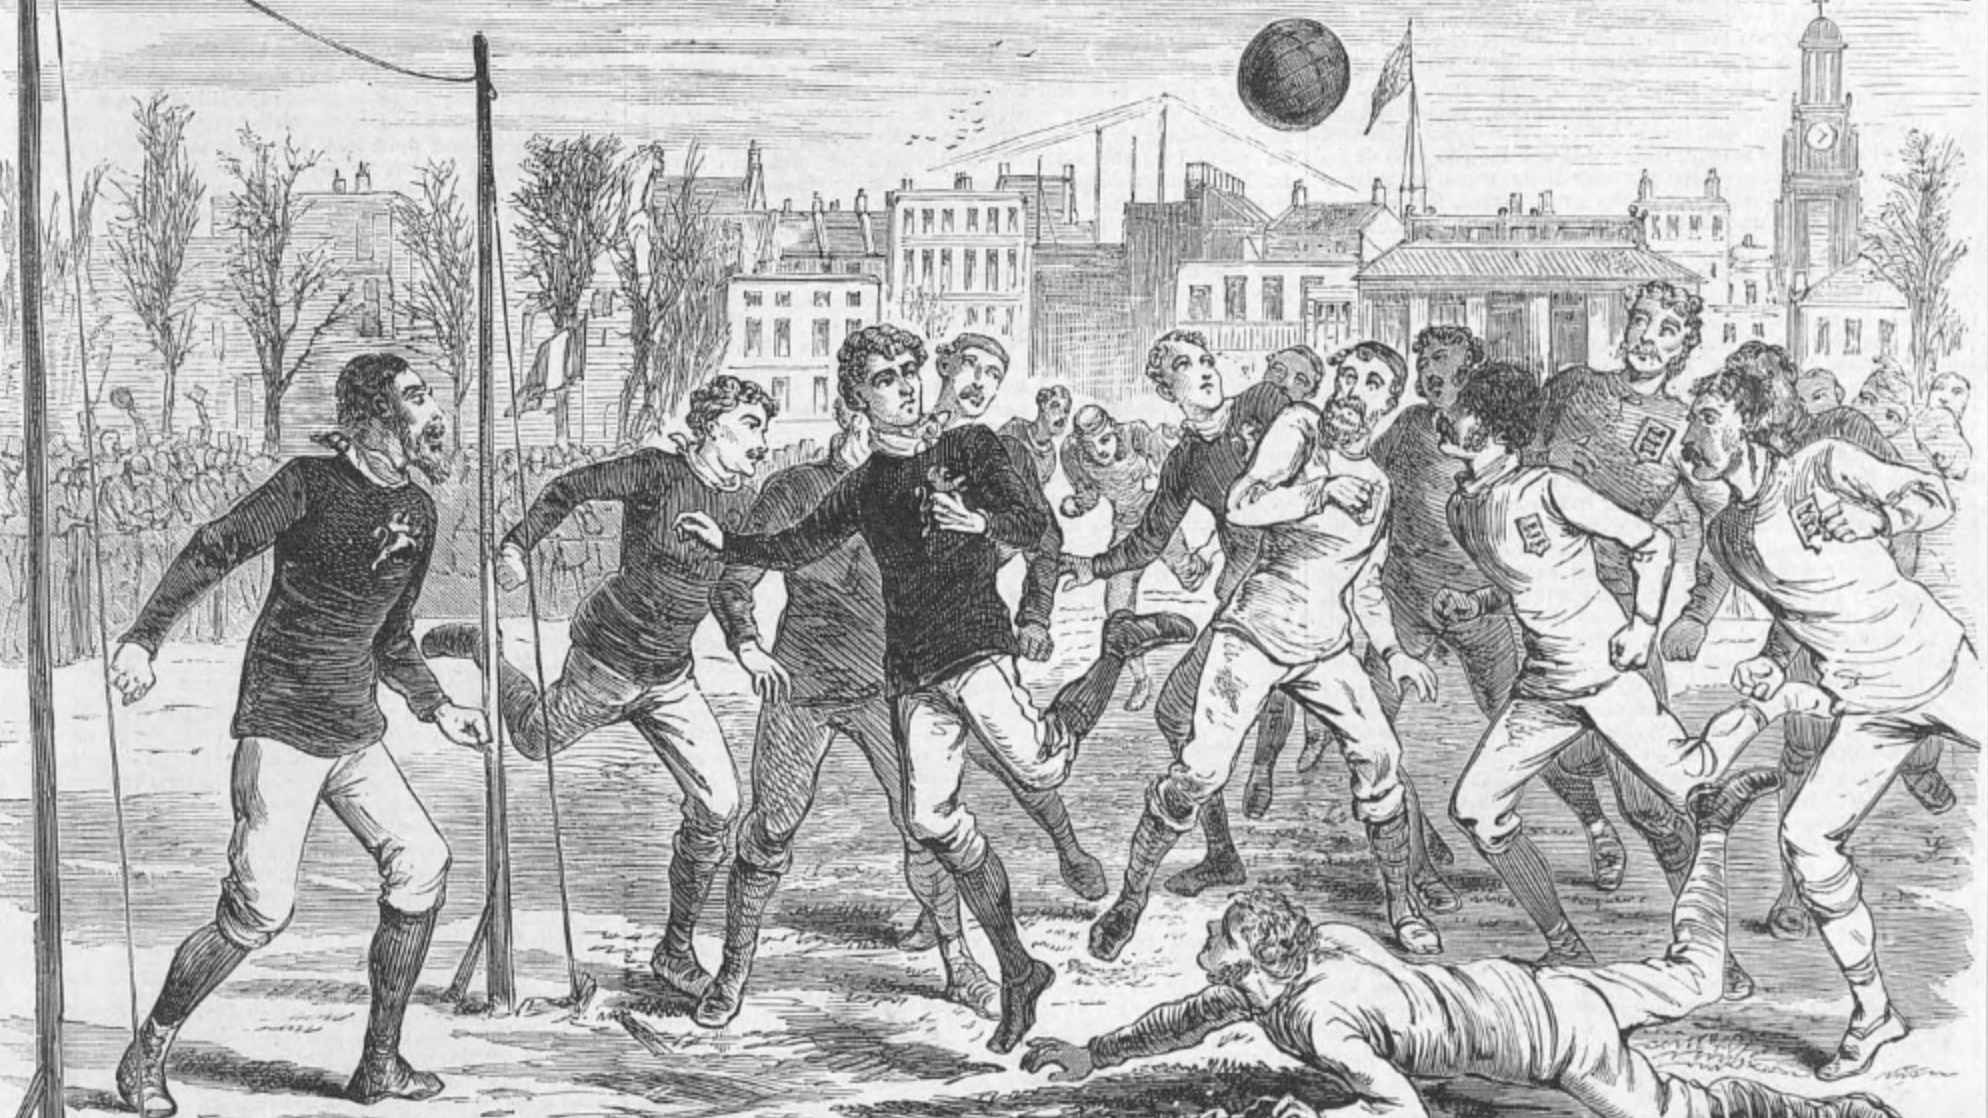 Возникновения игры футбол. Зарождение футбола в Англии. Англия Шотландия 1872. Первый футбольный матч Англия Шотландия 1872. Футбол в Англии 19 век.